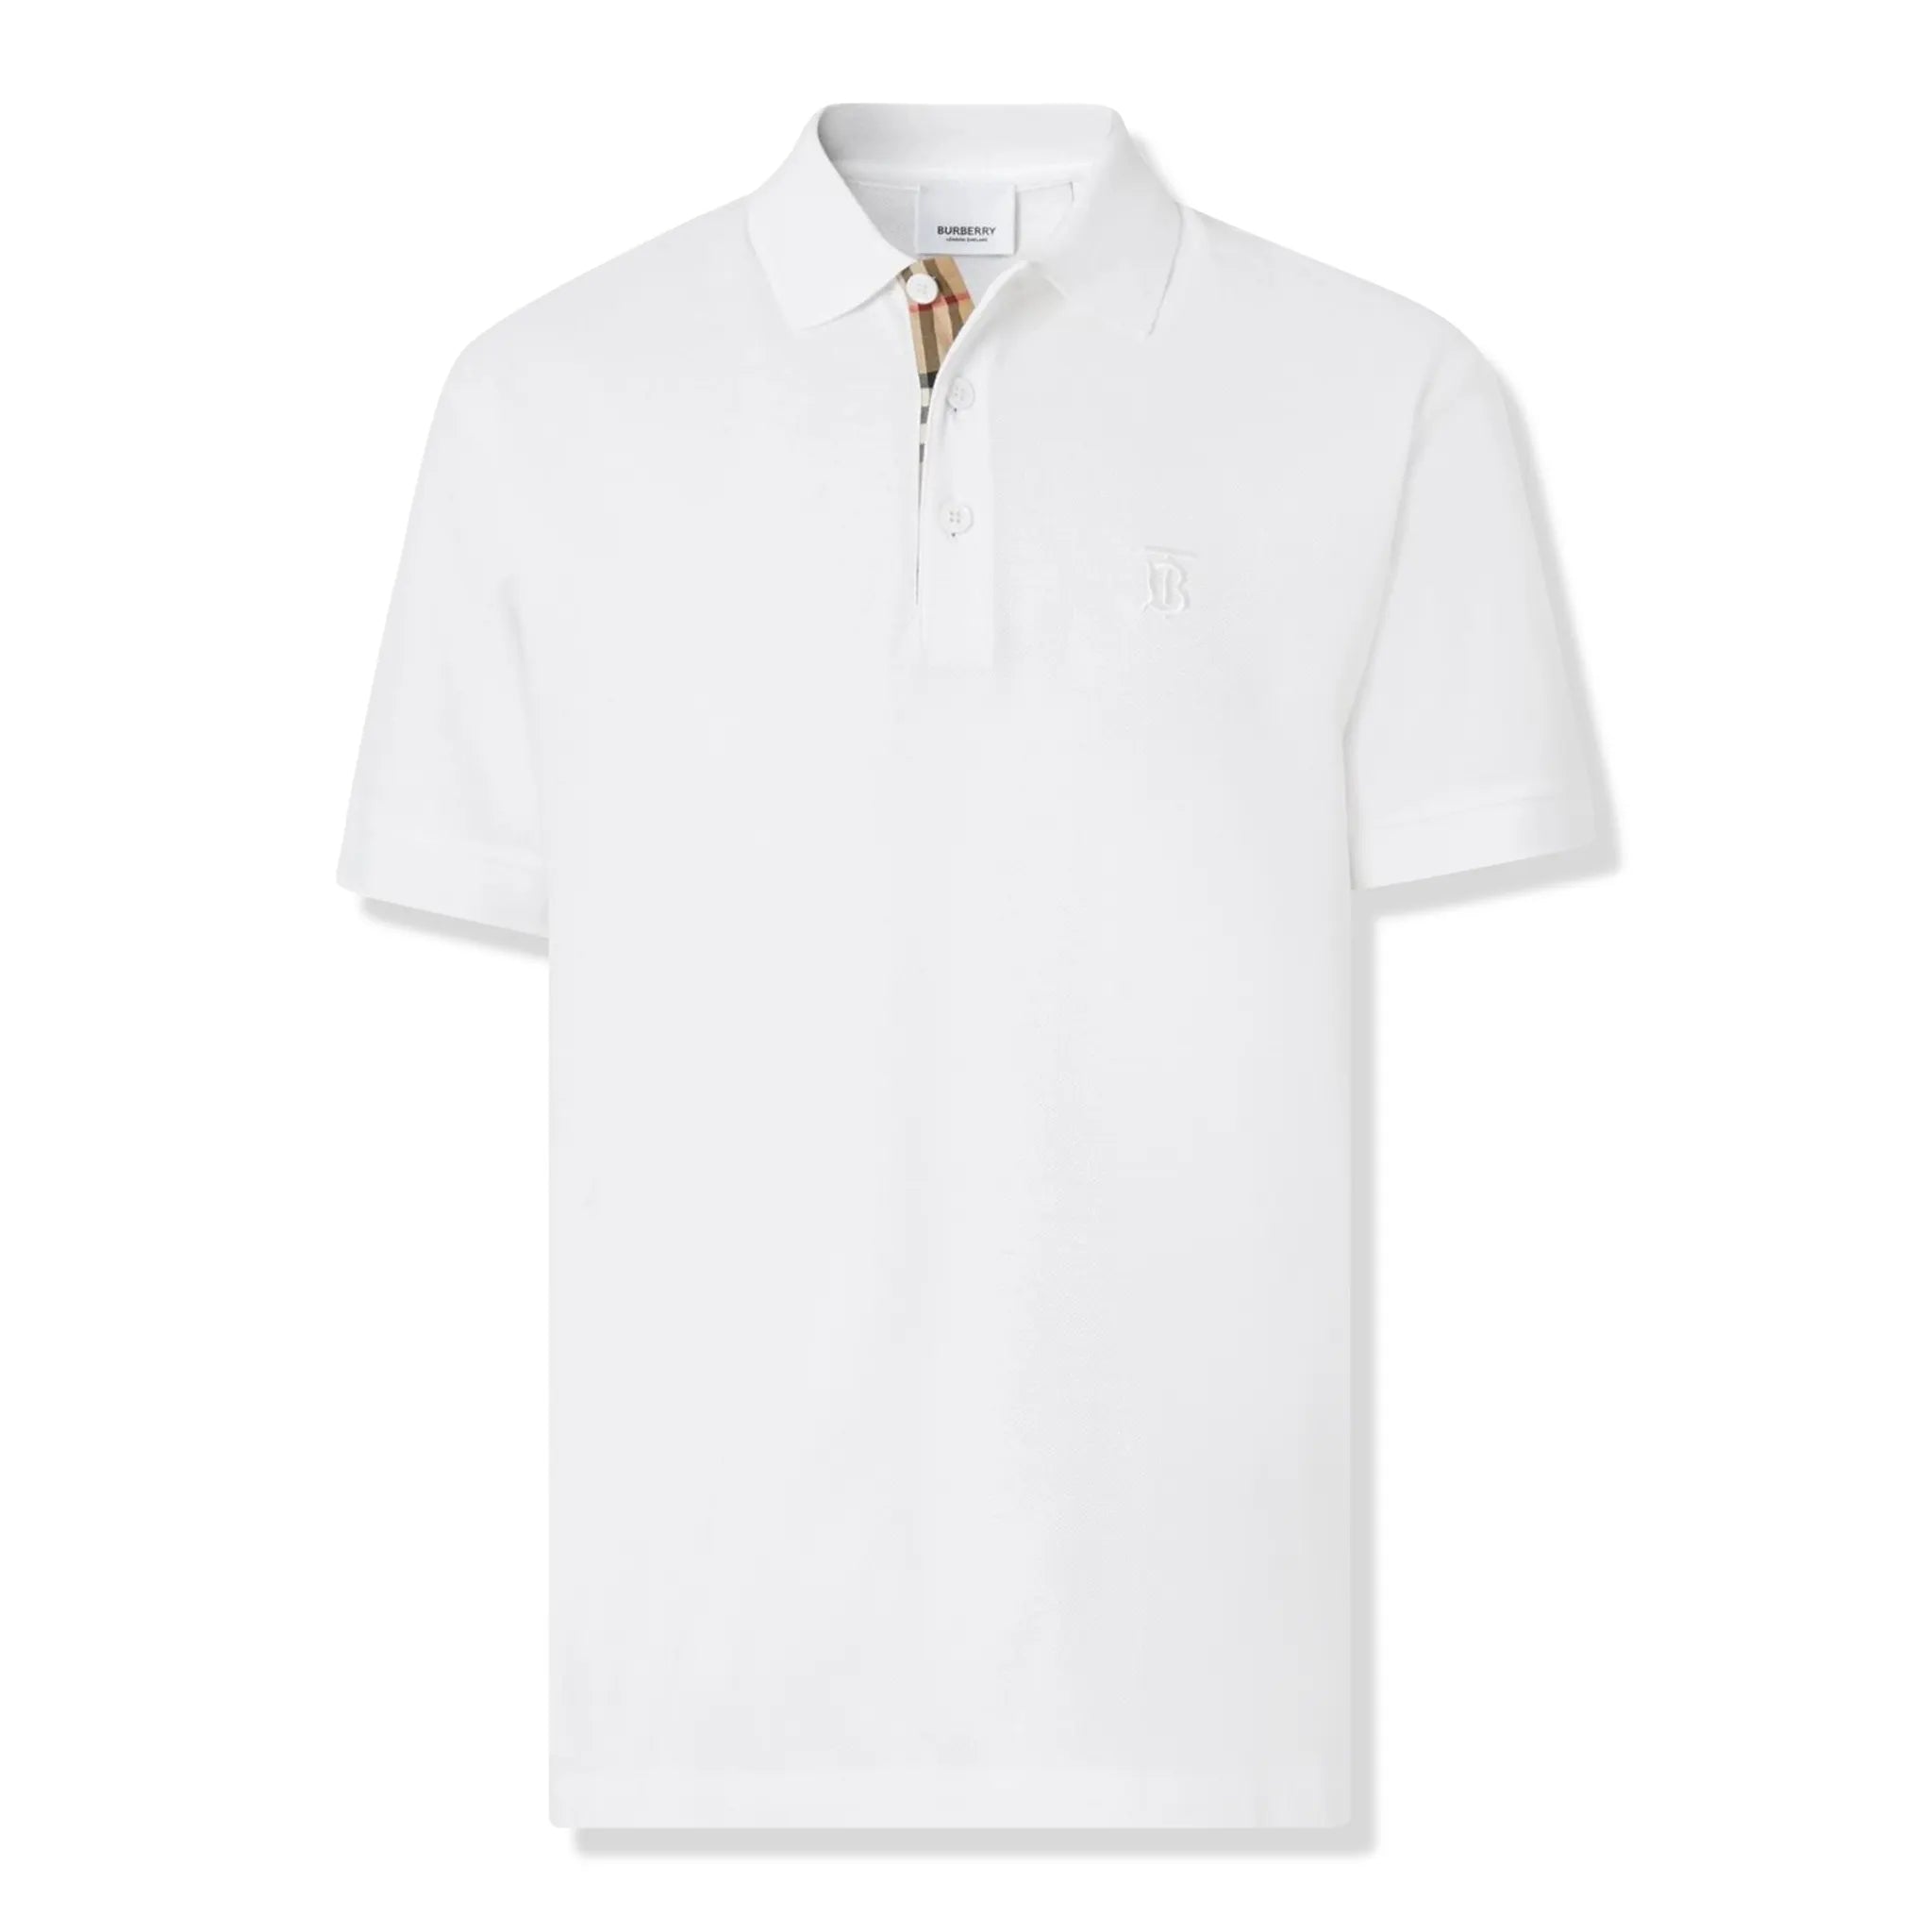 Front view of Burberry Eddie Logo Piqué Cotton White Polo Shirt P80552291